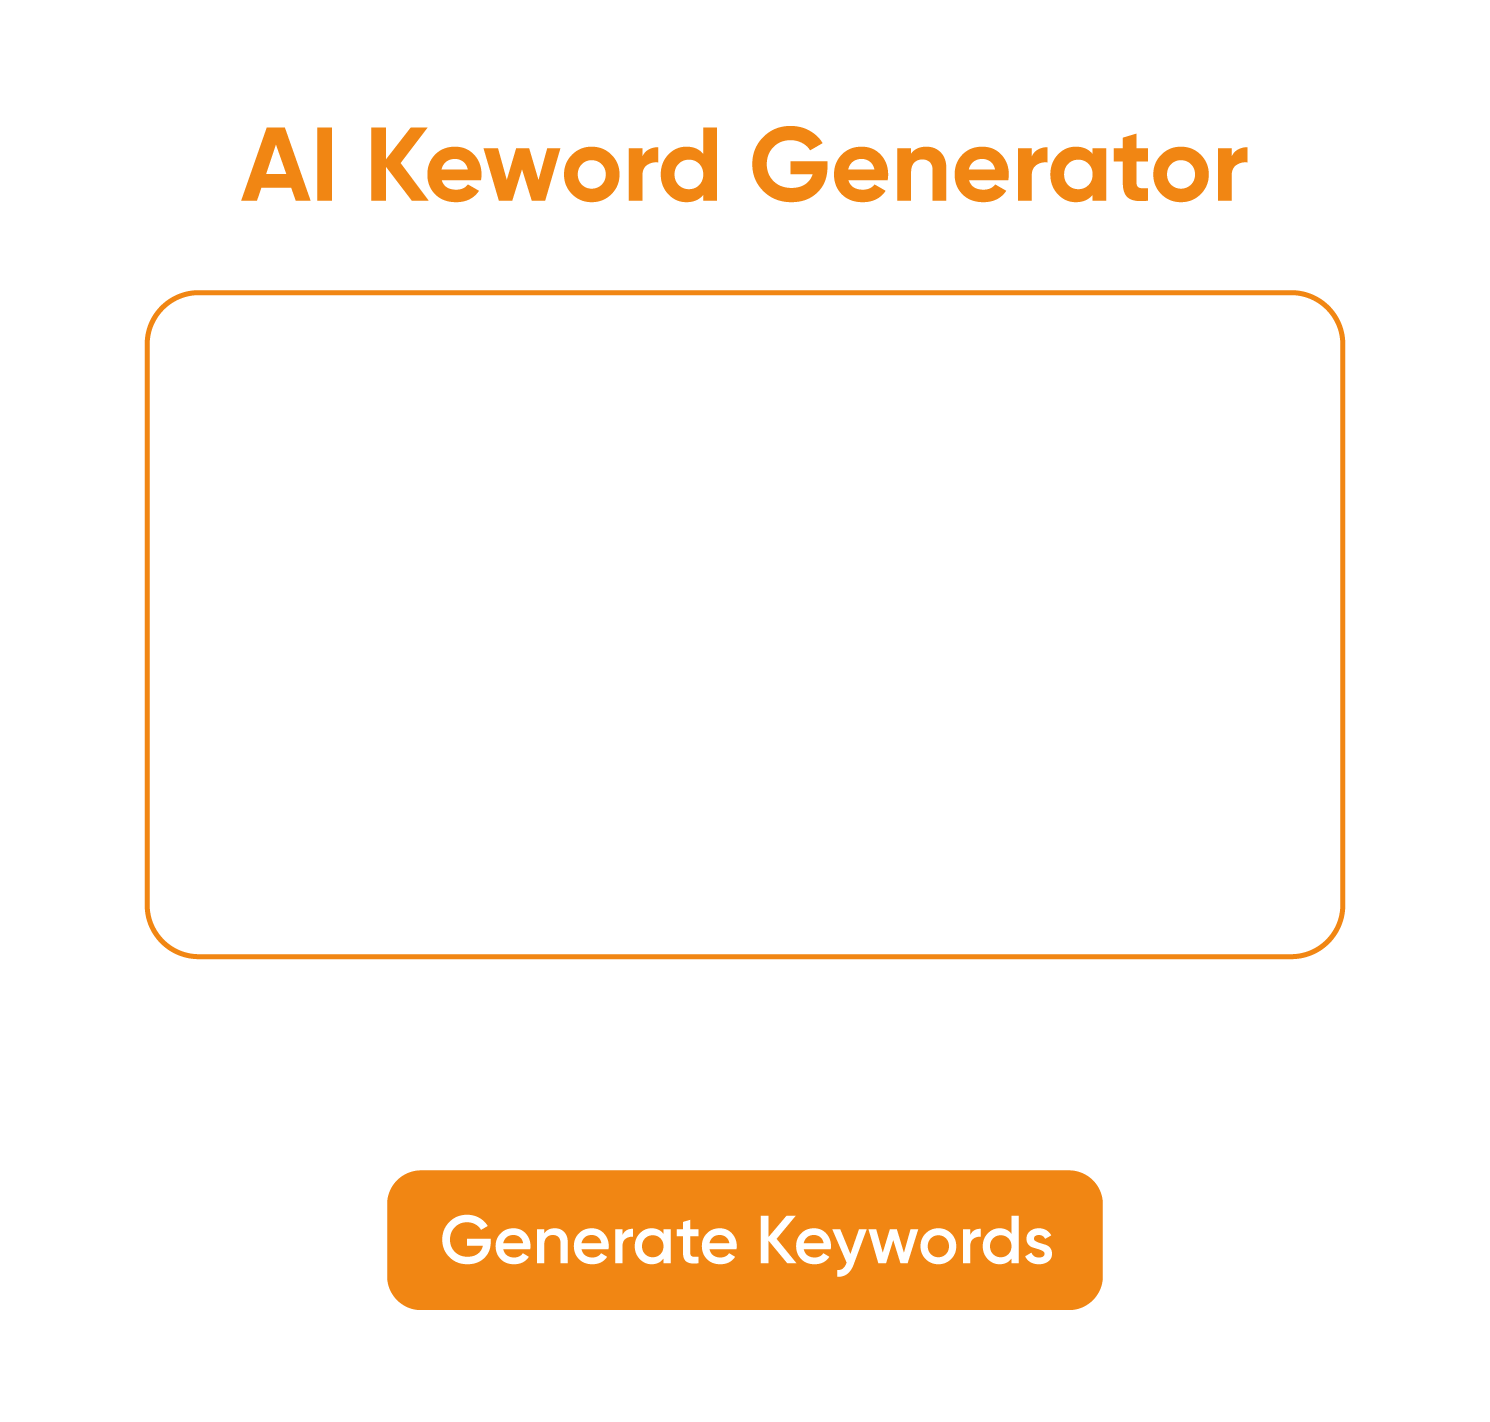 Ettvi's AI Keywords Generator